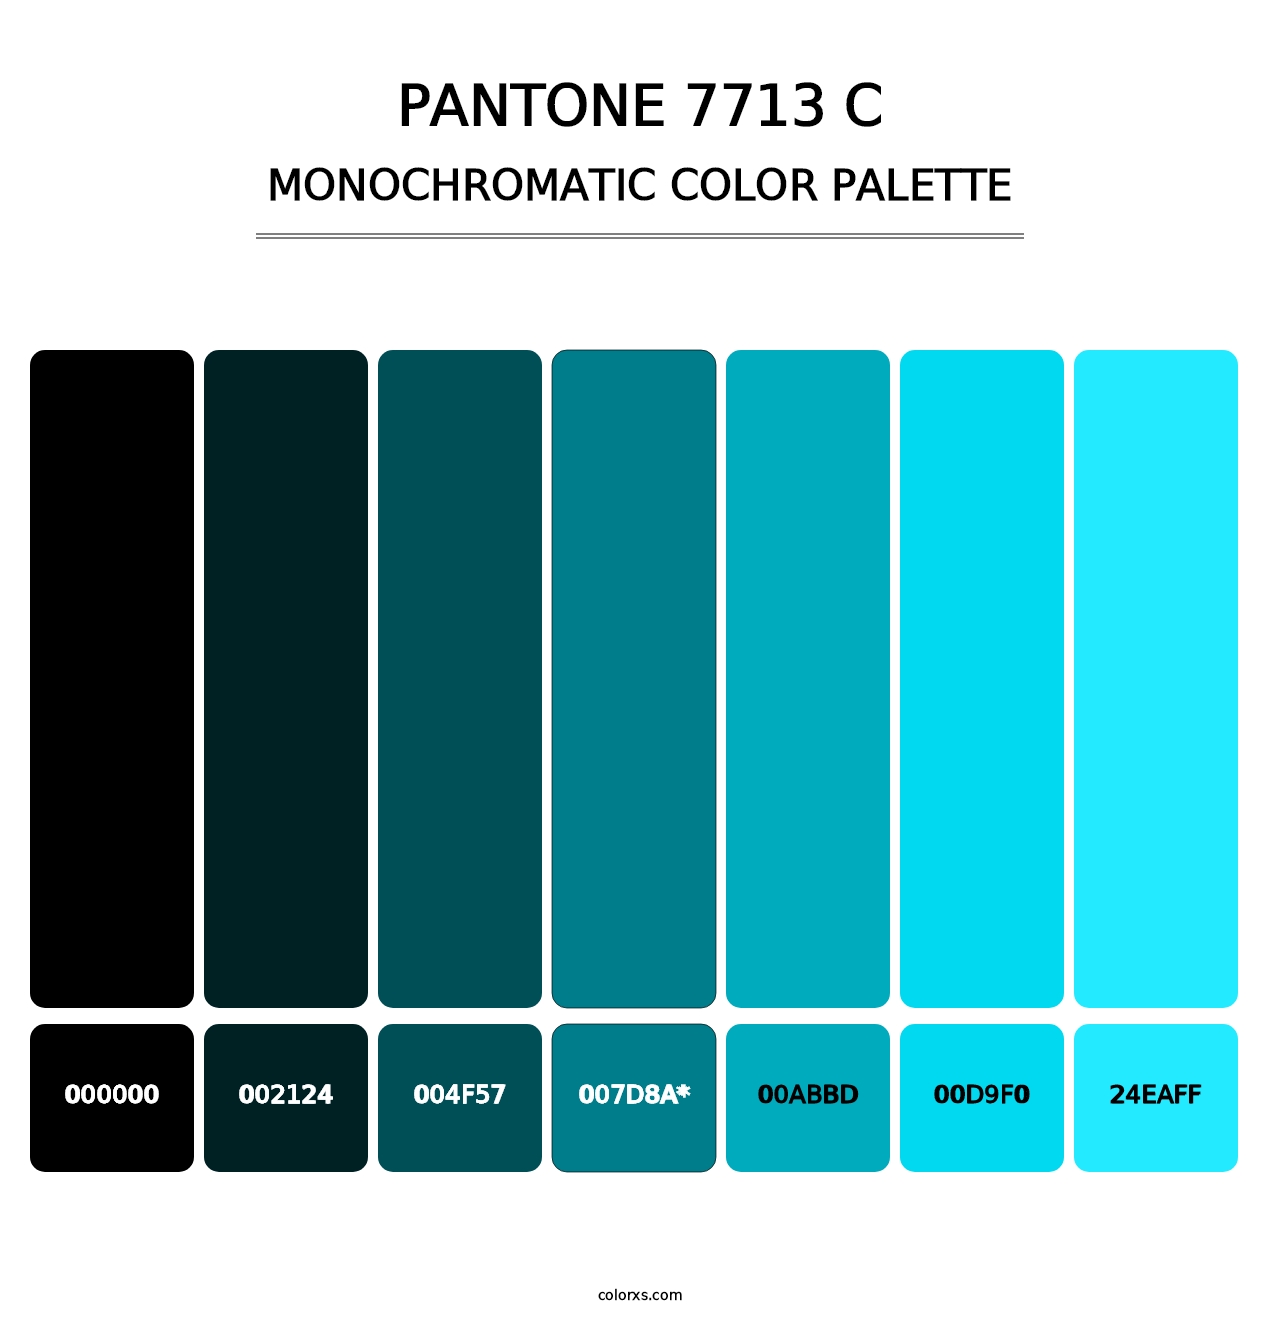 PANTONE 7713 C - Monochromatic Color Palette